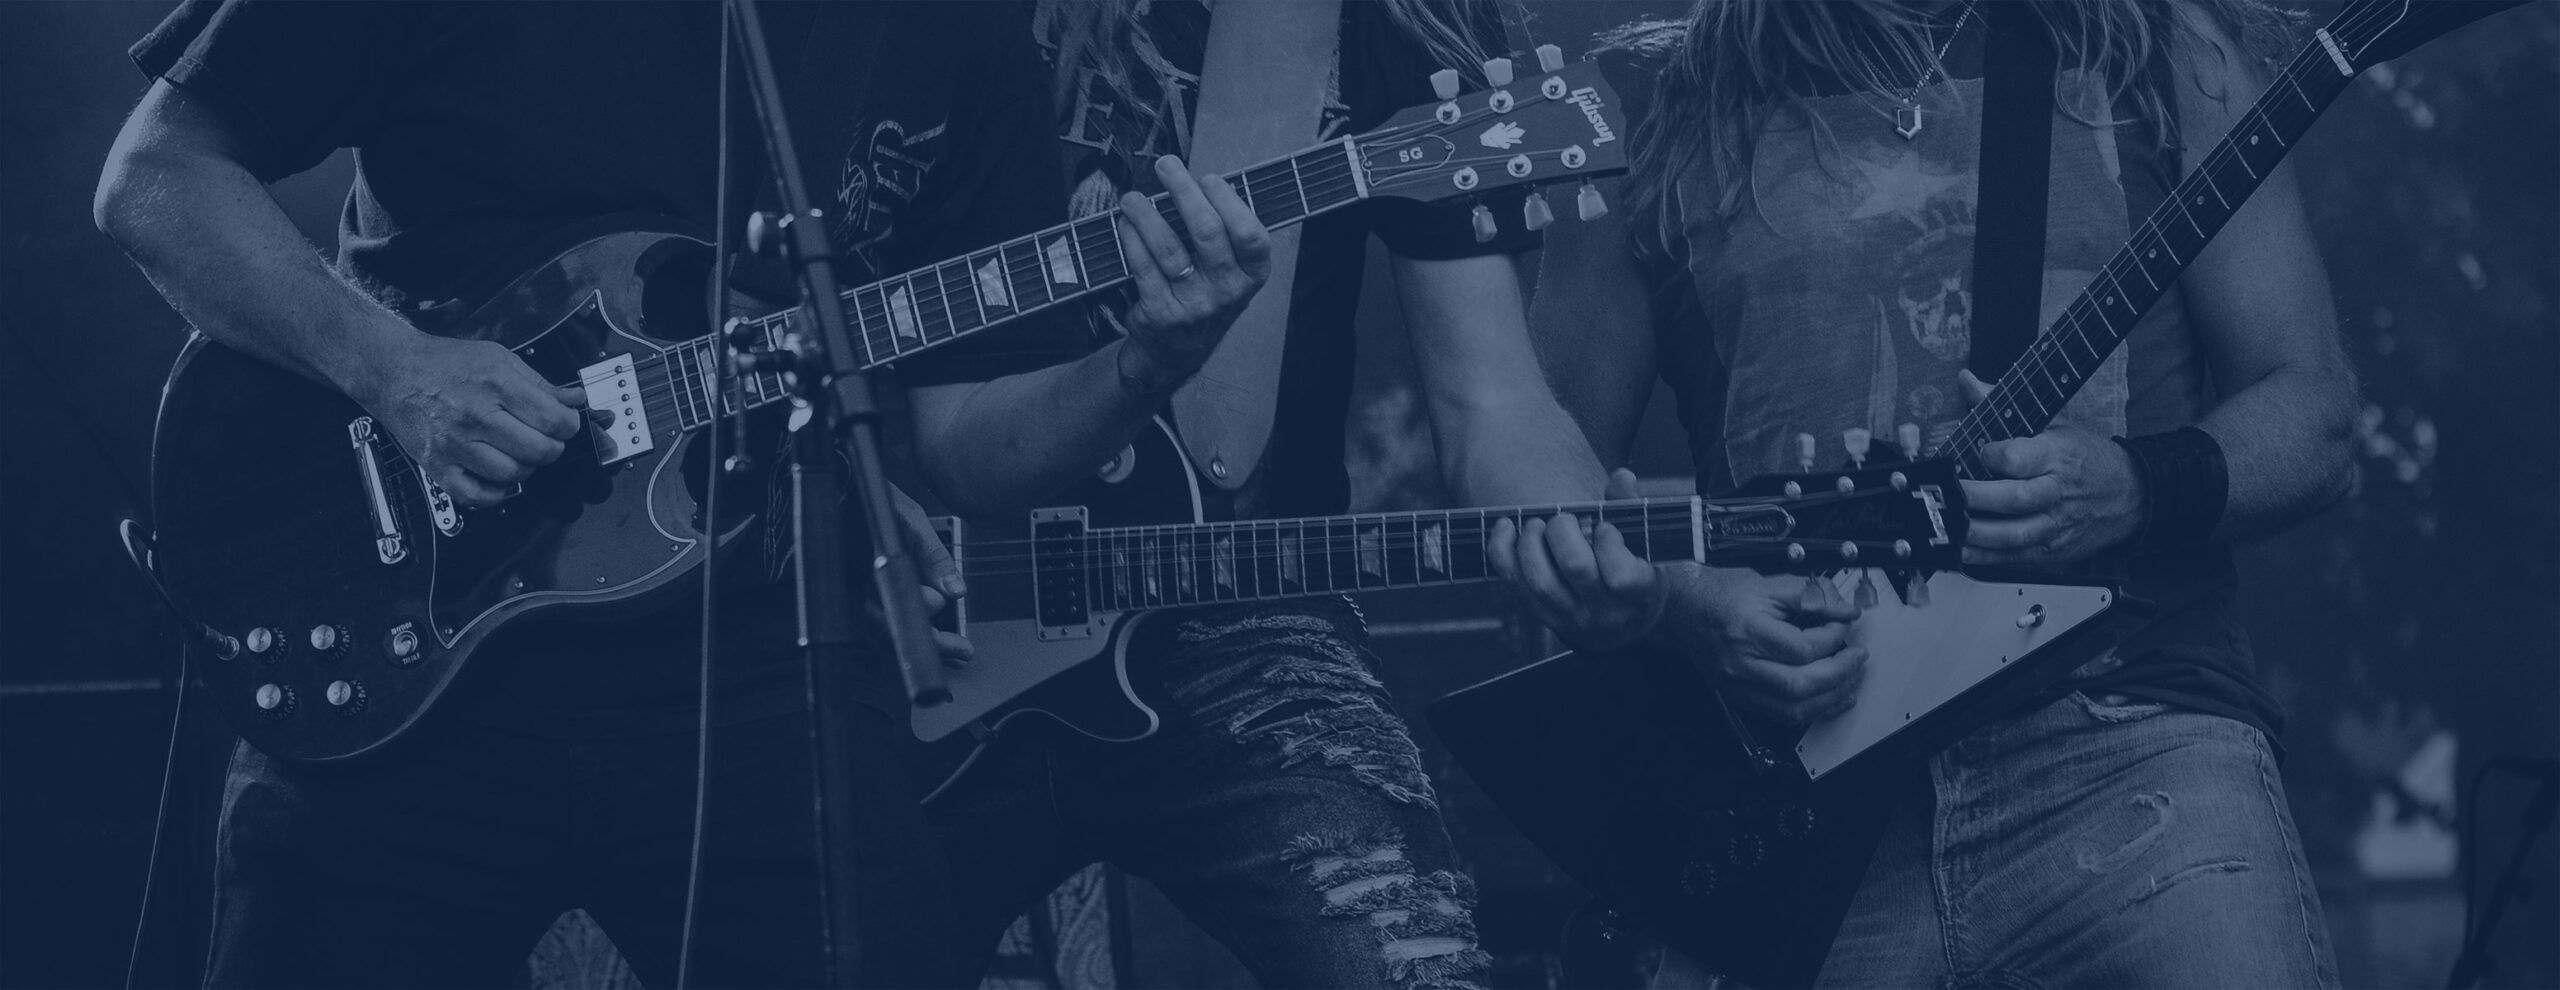 Rock festivals, guitarist playing a Gibson SG guitar